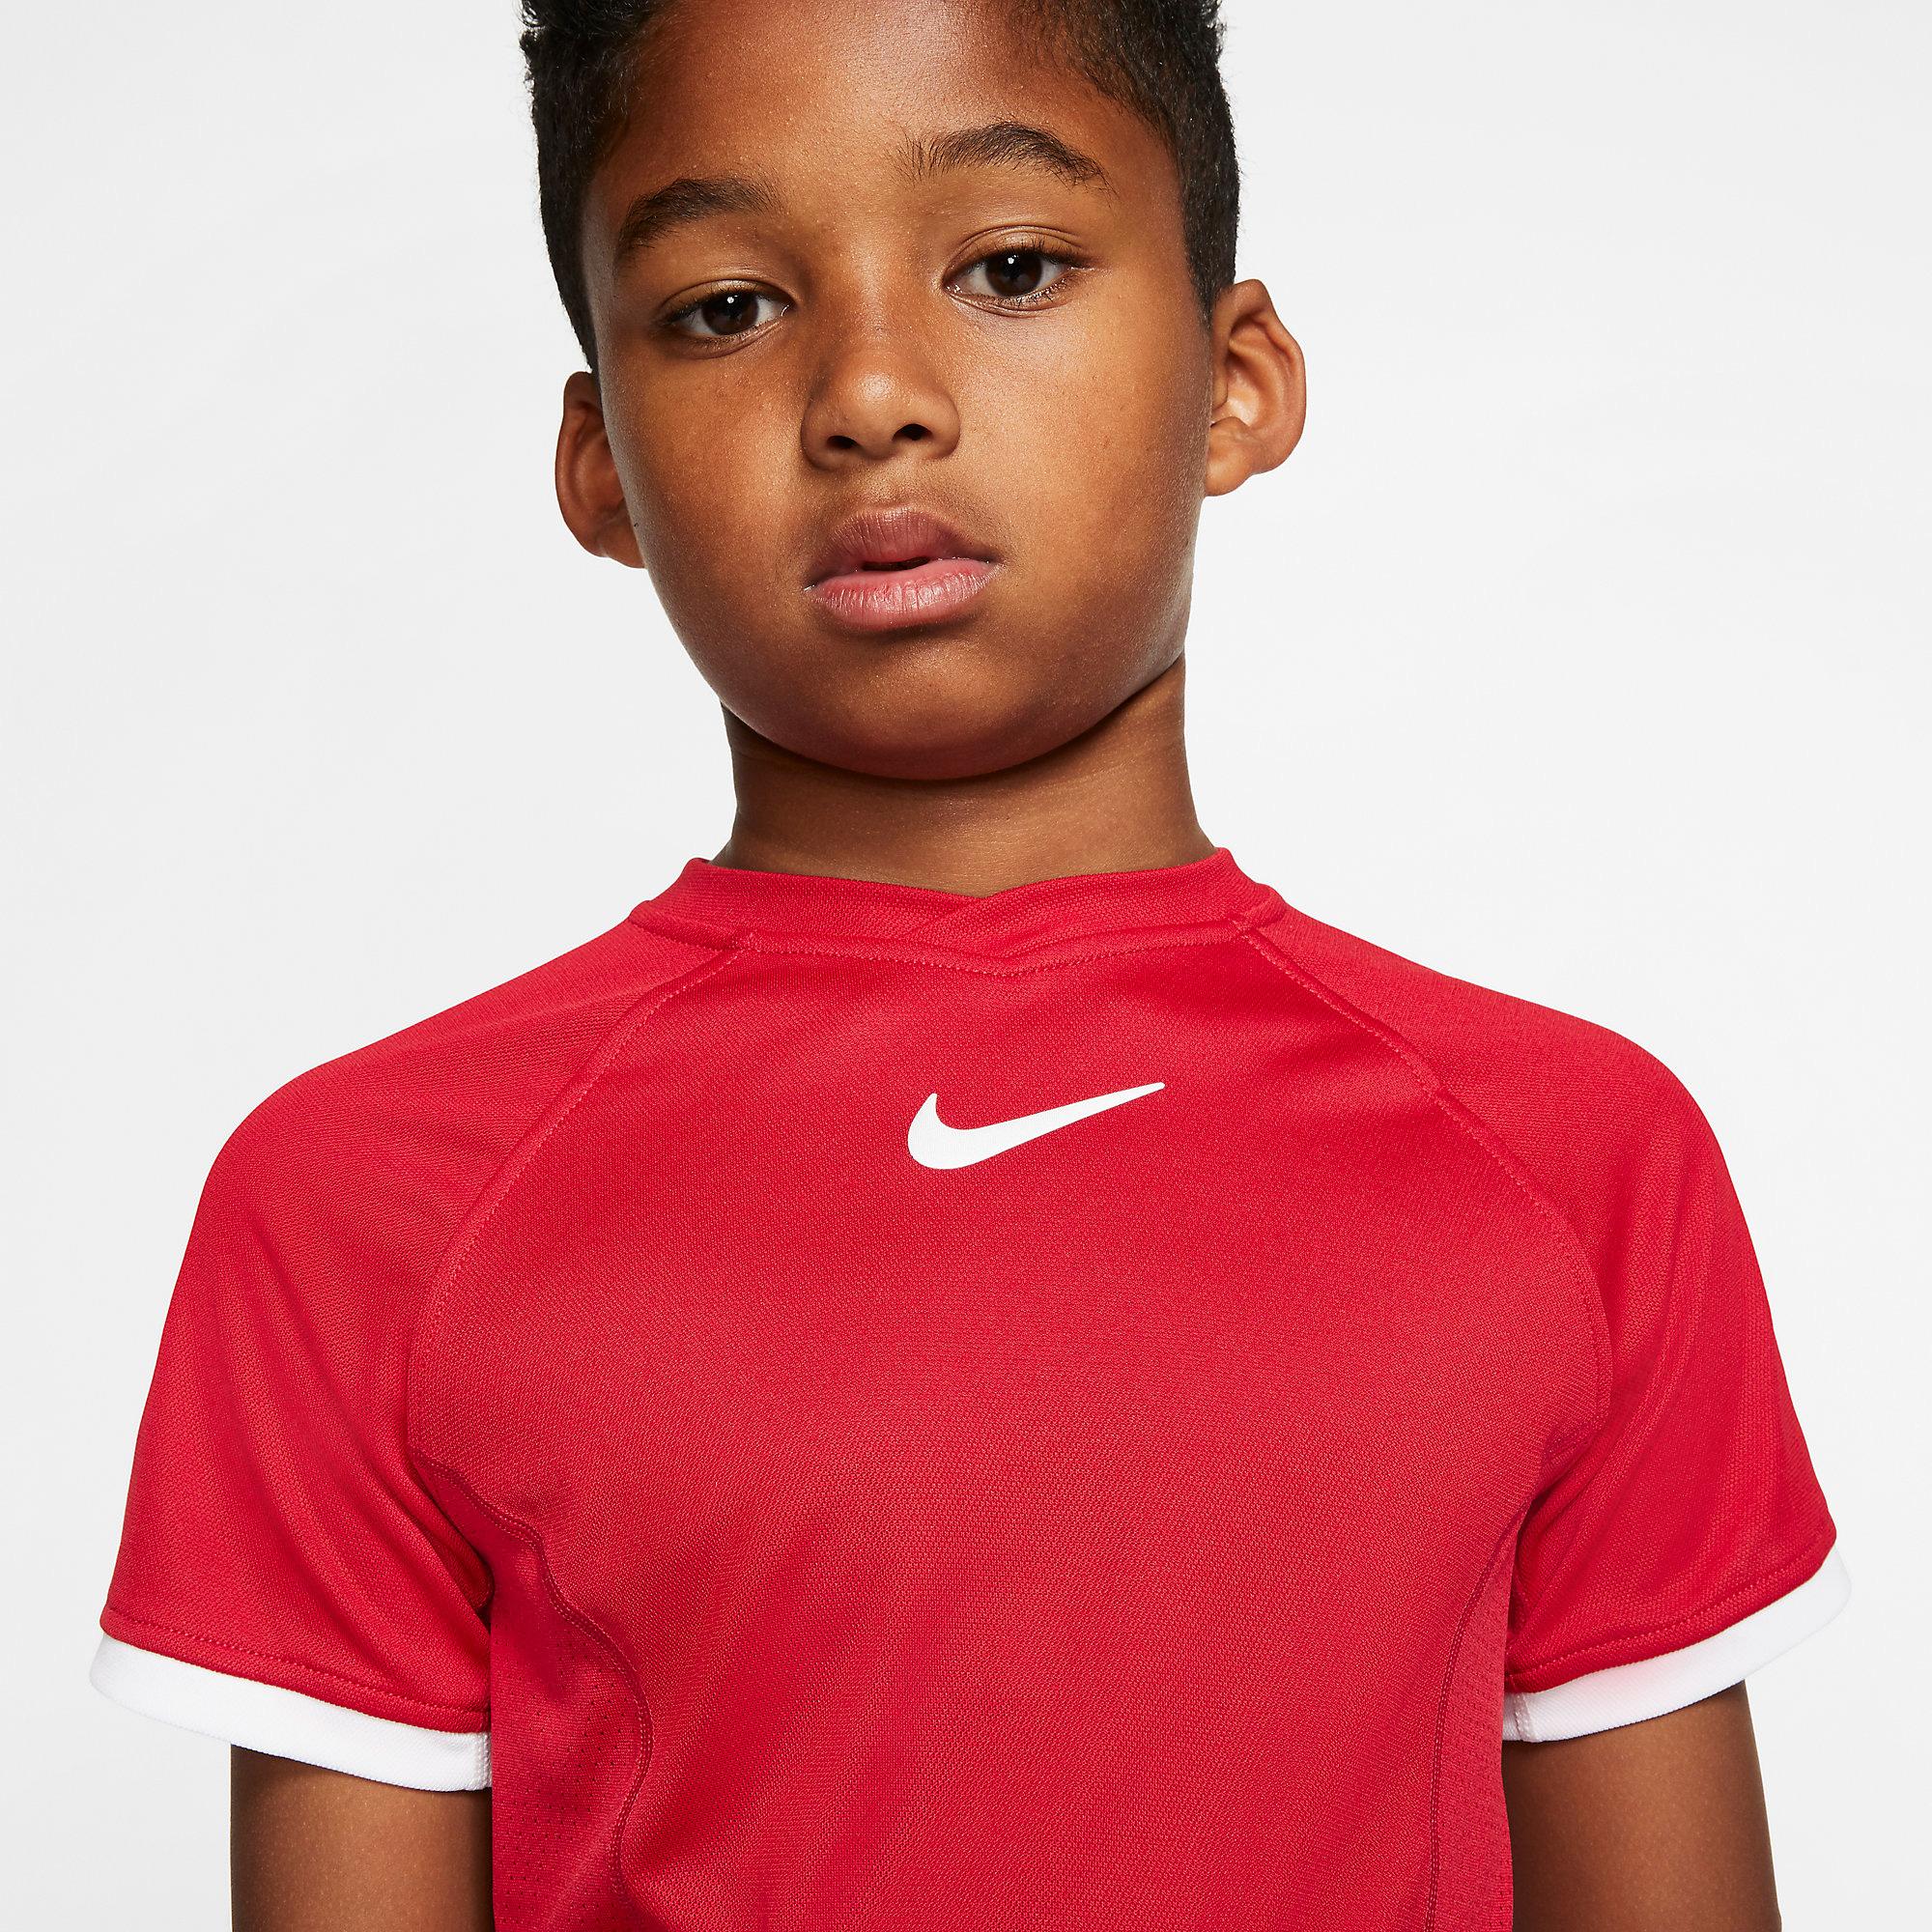 Nike Boys Dri-FIT Short Sleeved Top - Gym Red/White - Tennisnuts.com